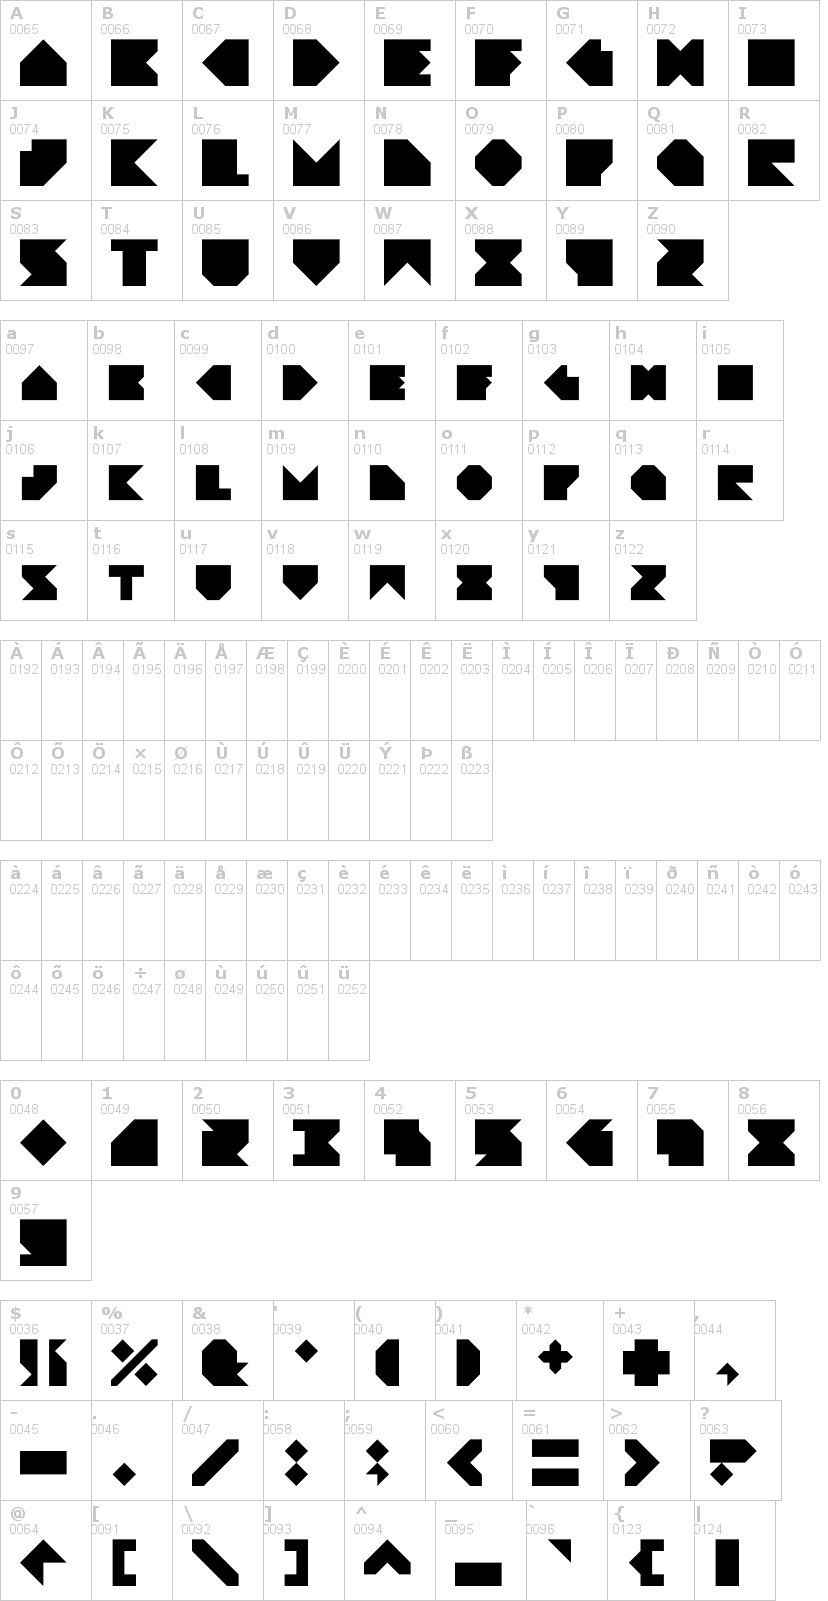 Lettere dell'alfabeto del font angleblock con le quali è possibile realizzare adesivi prespaziati